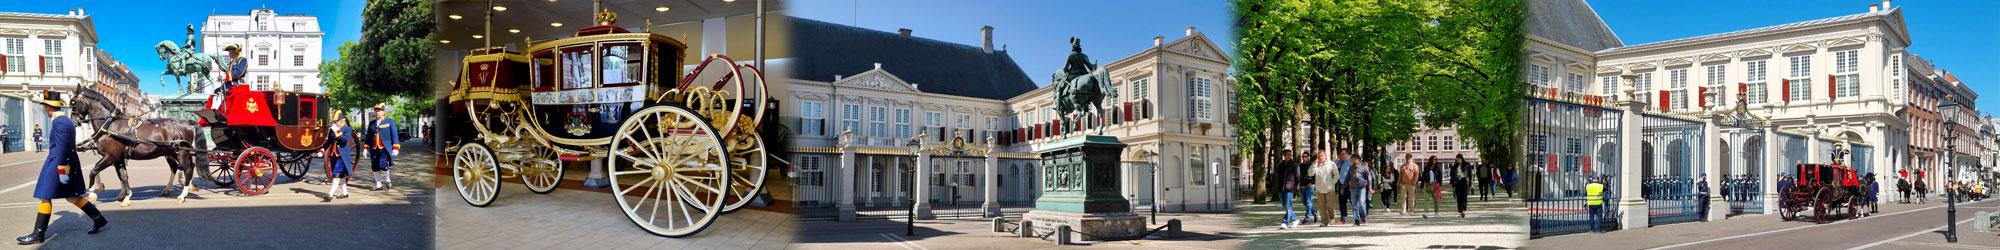 Wandeling Koninklijk Den Haag